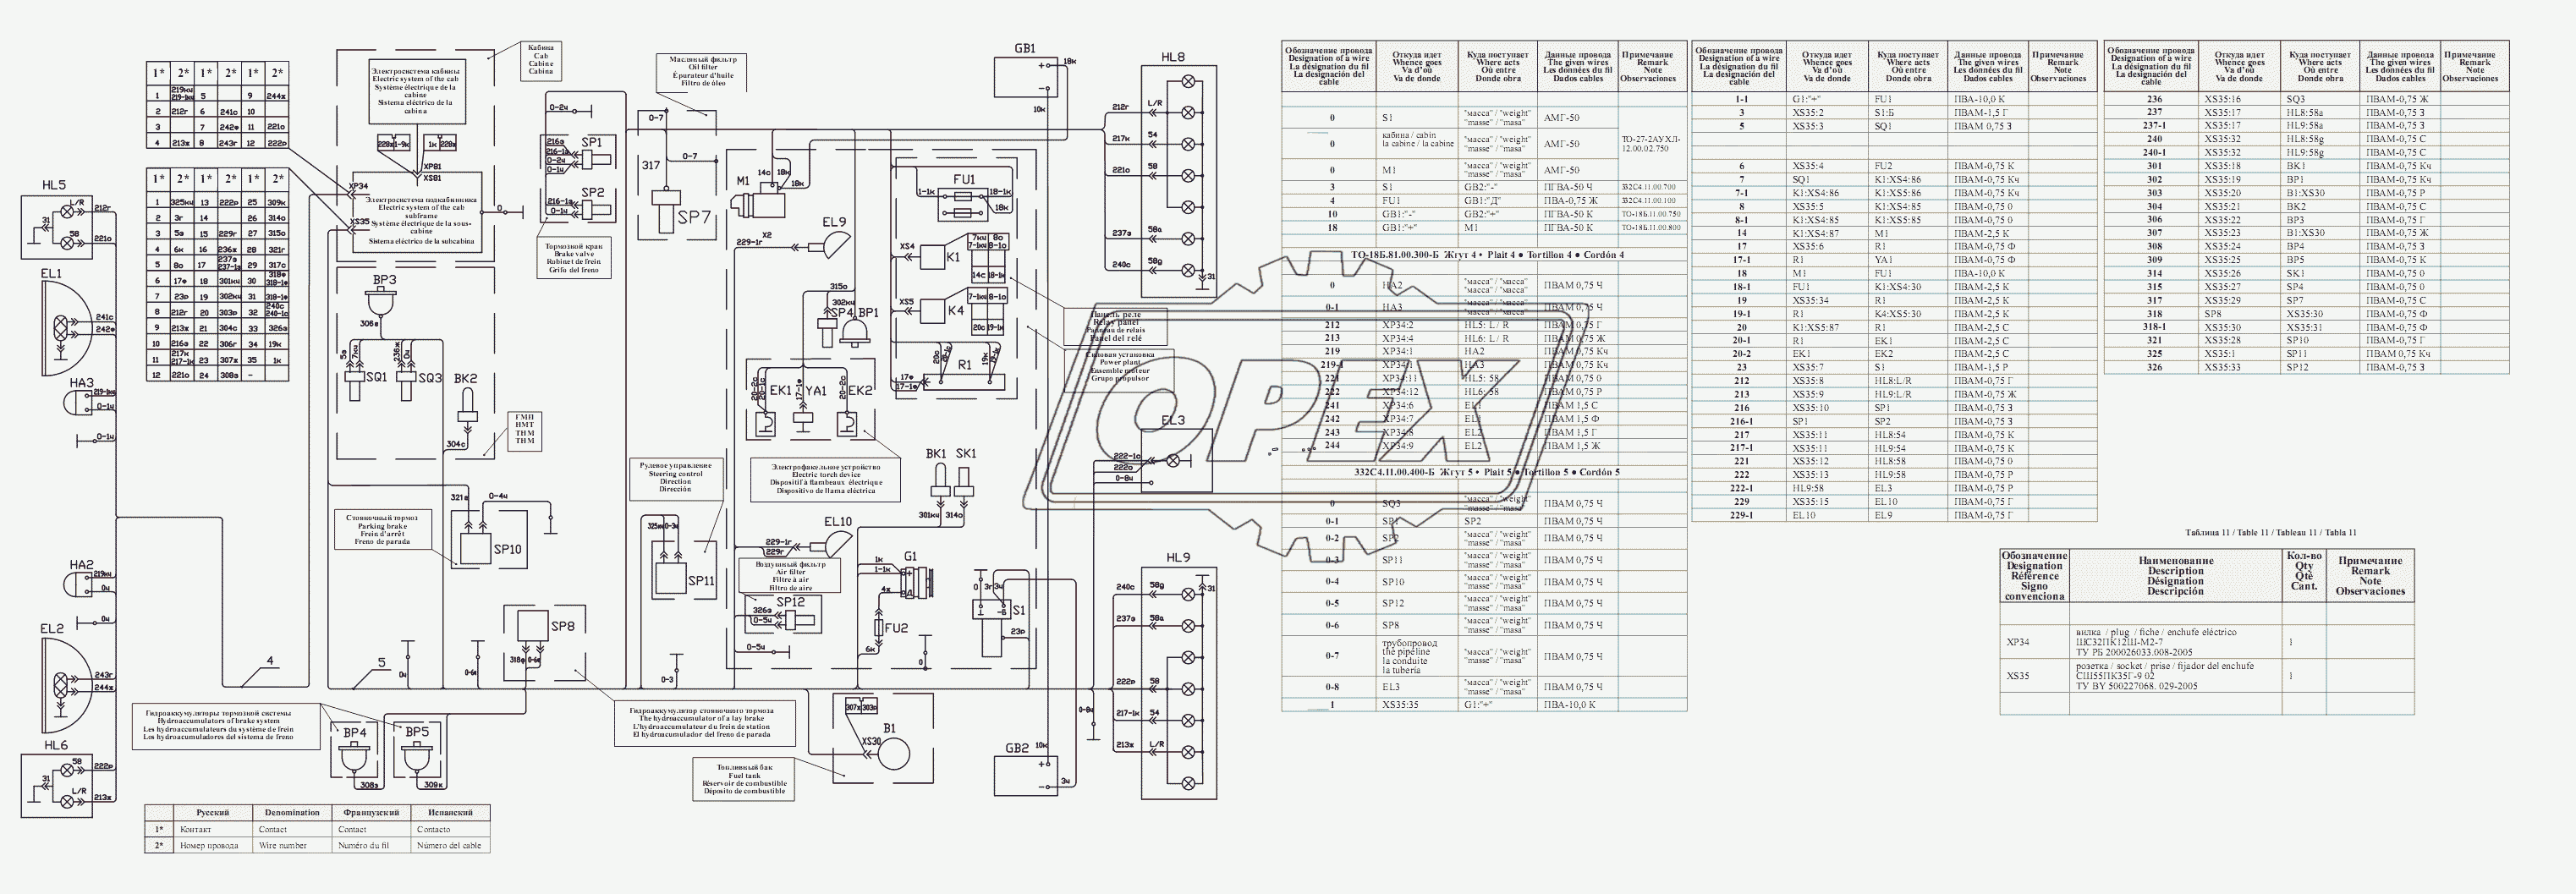 Схема электрическая соединений 342С5.11.00.000 Э4.Таблица соединений